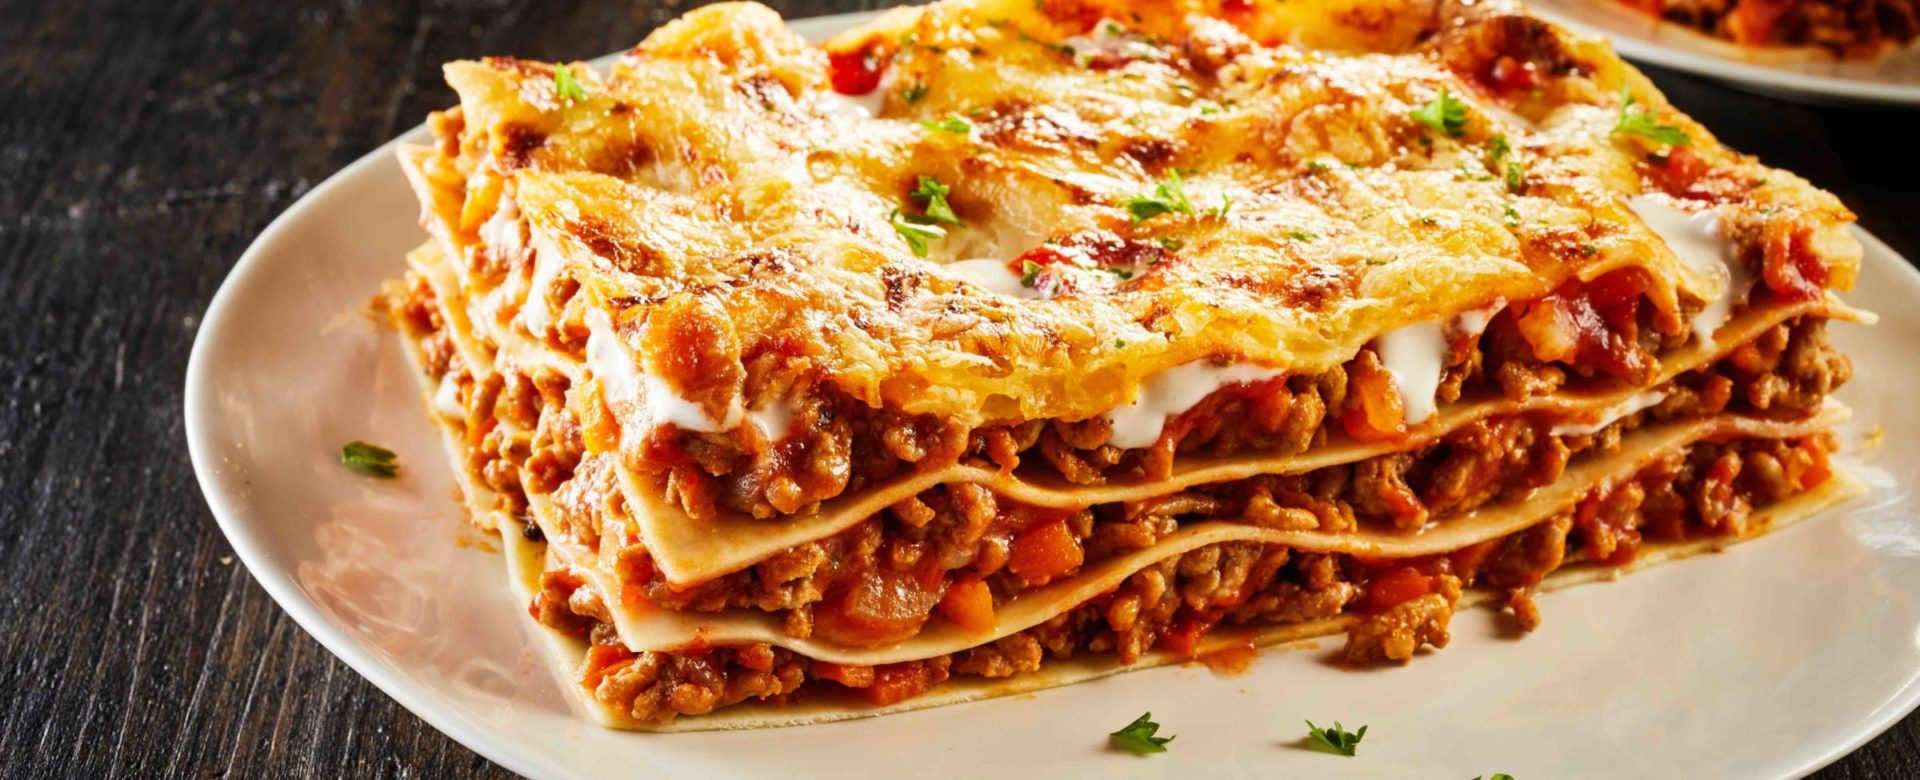 Luchten Scheiden humor Alles wat je moet weten over lasagne - Pastaficio - Experts in Pasta